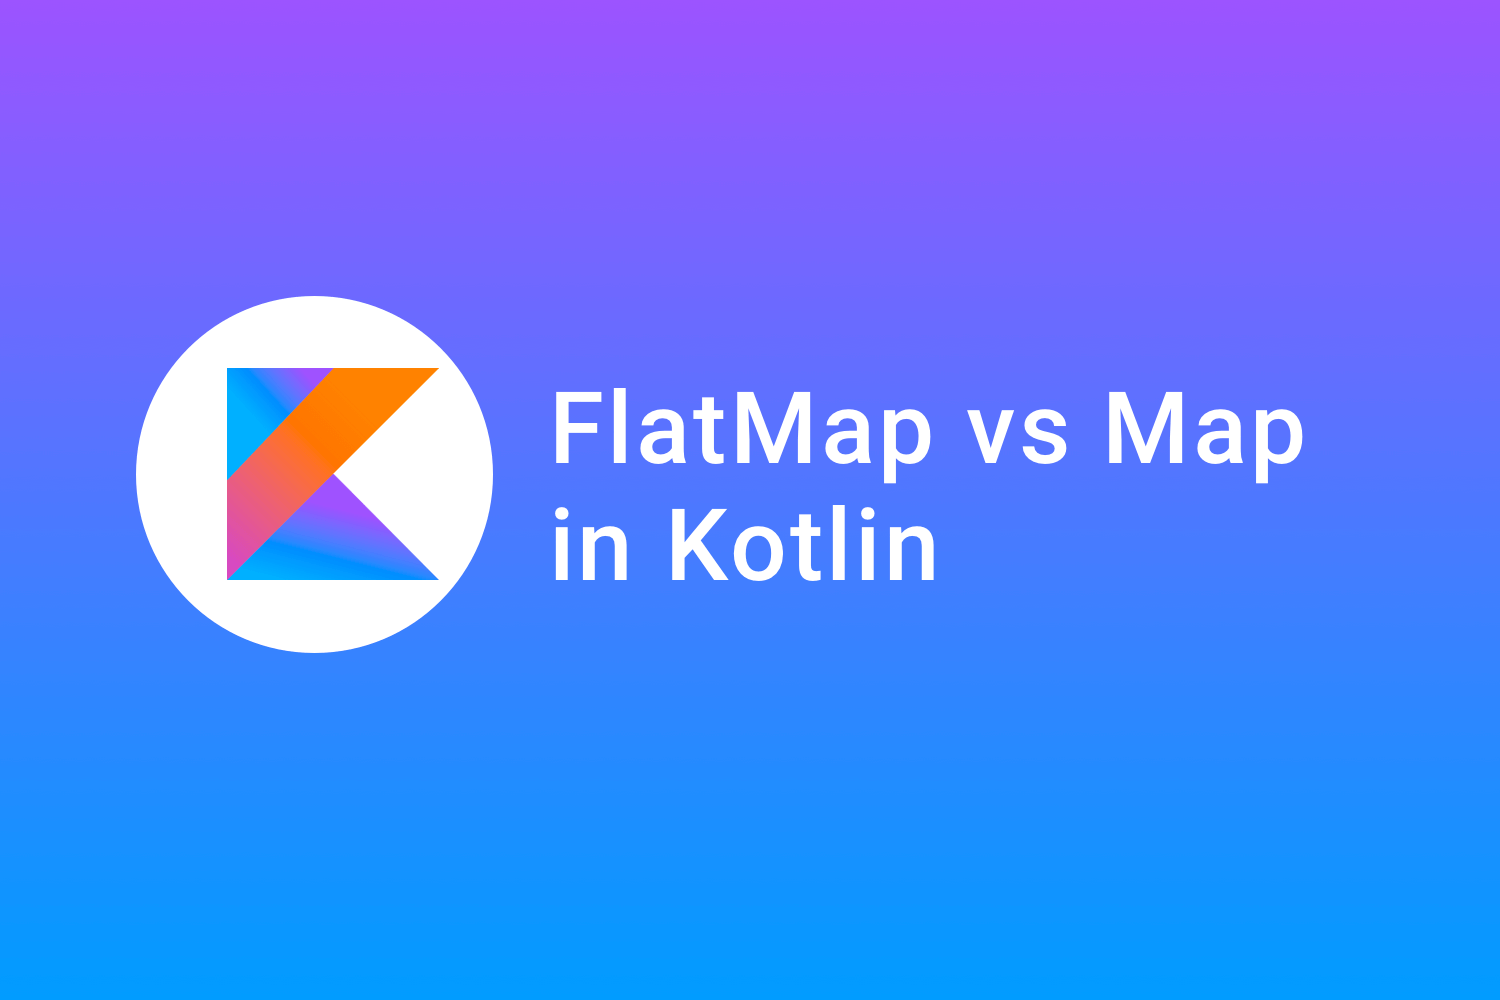 FlatMap vs Map in Kotlin